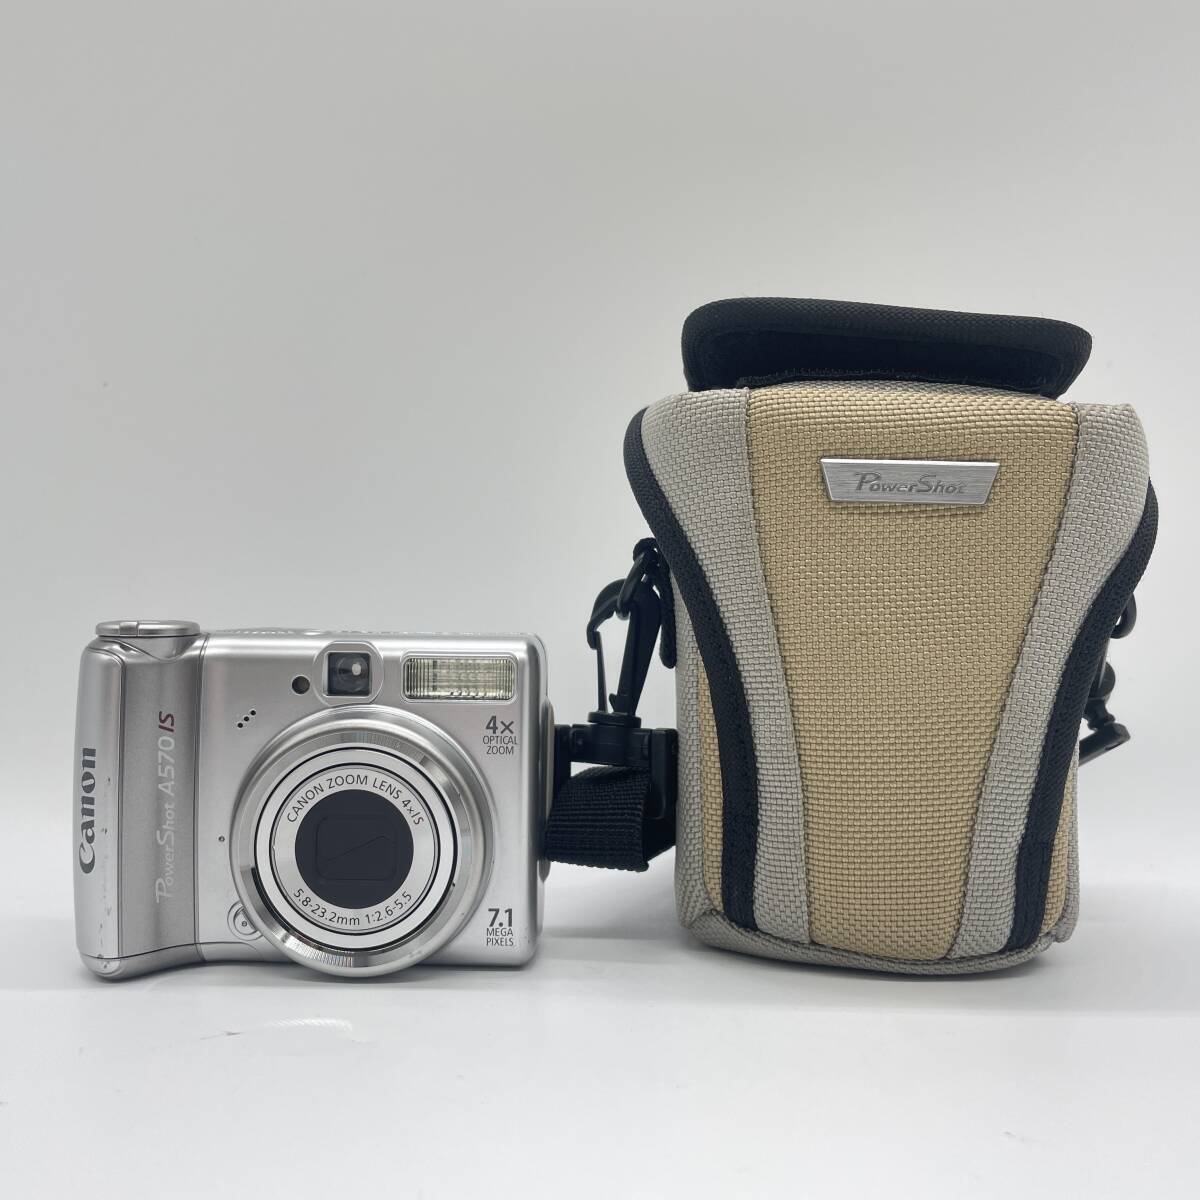  【動作確認済み・状態良好品】Canon PowerShot A570 is コンデジ デジカメ デジタルカメラ シャッター&フラッシュ動作OKの画像1